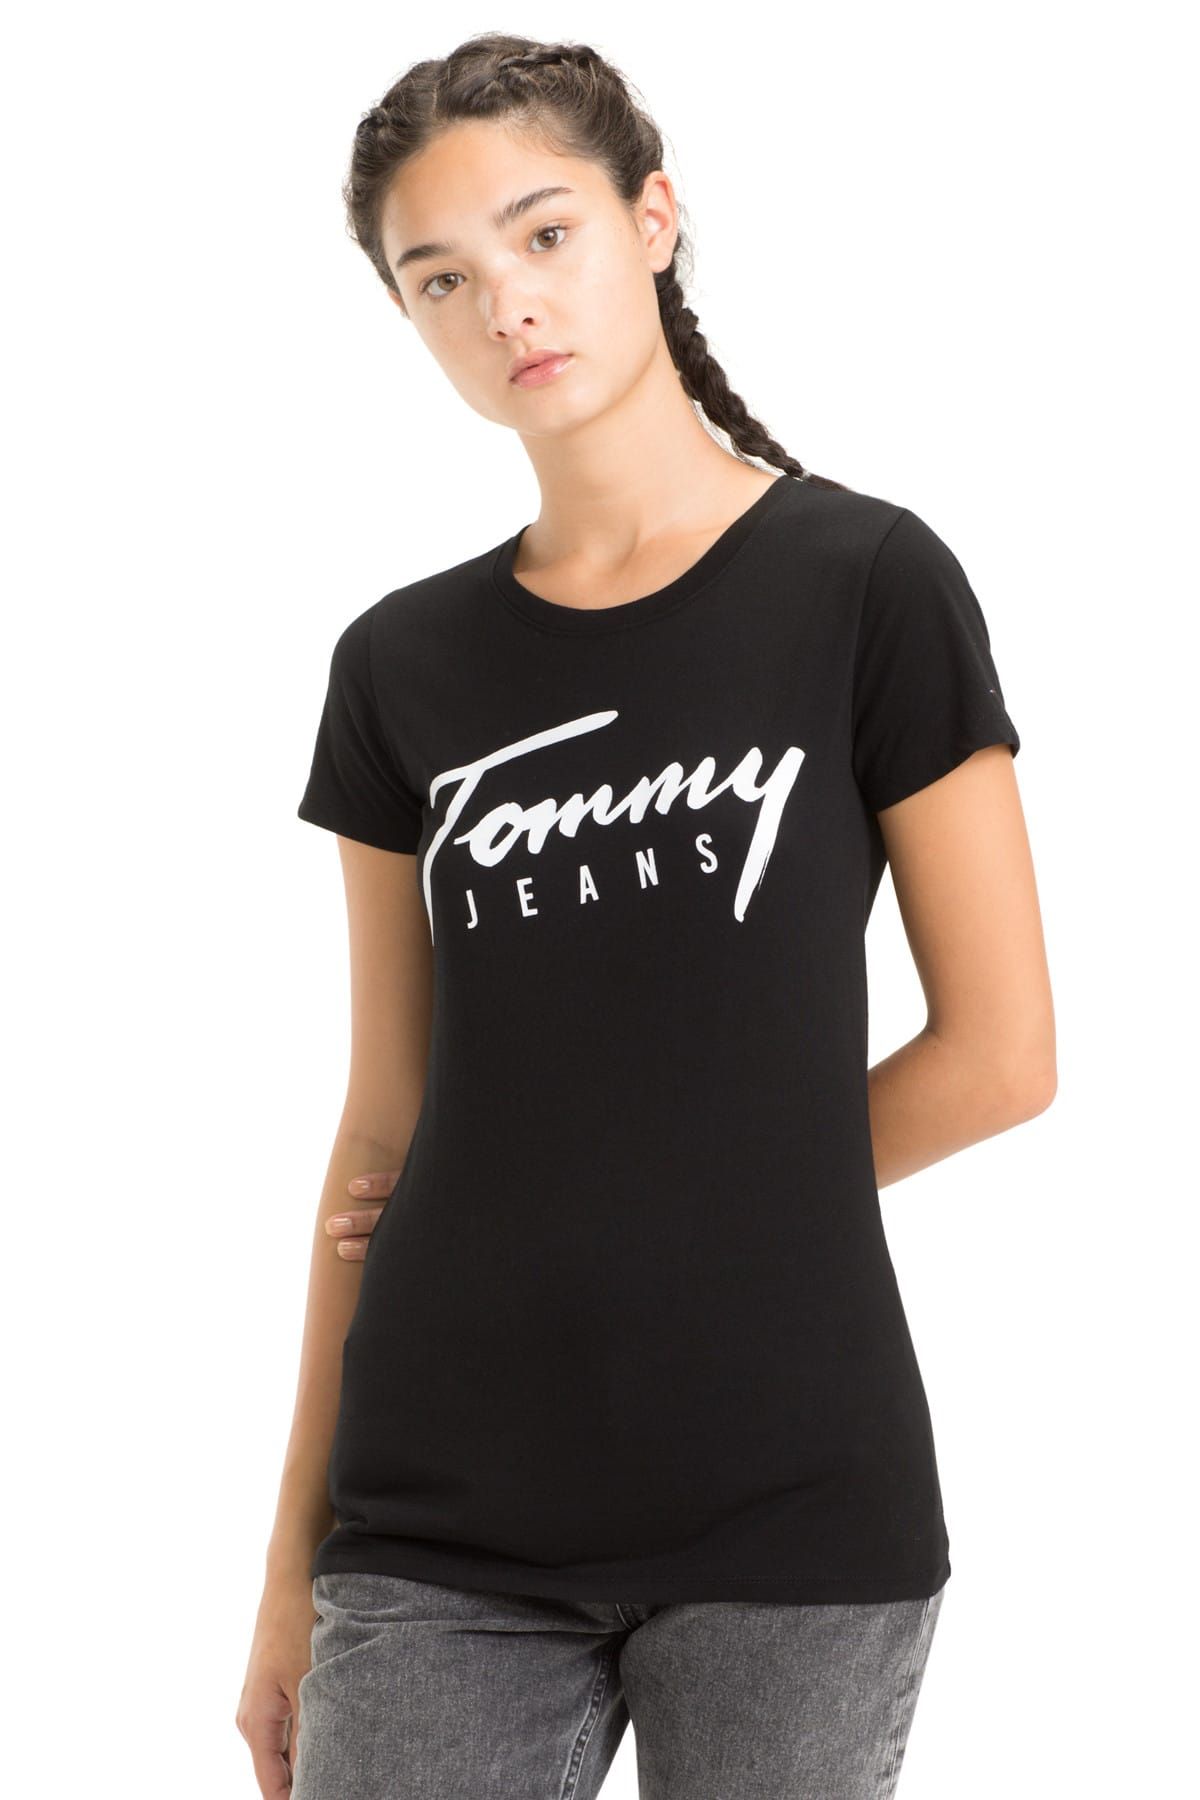 Tommy Hilfiger Kadın Script T-Shirt DW0DW05700